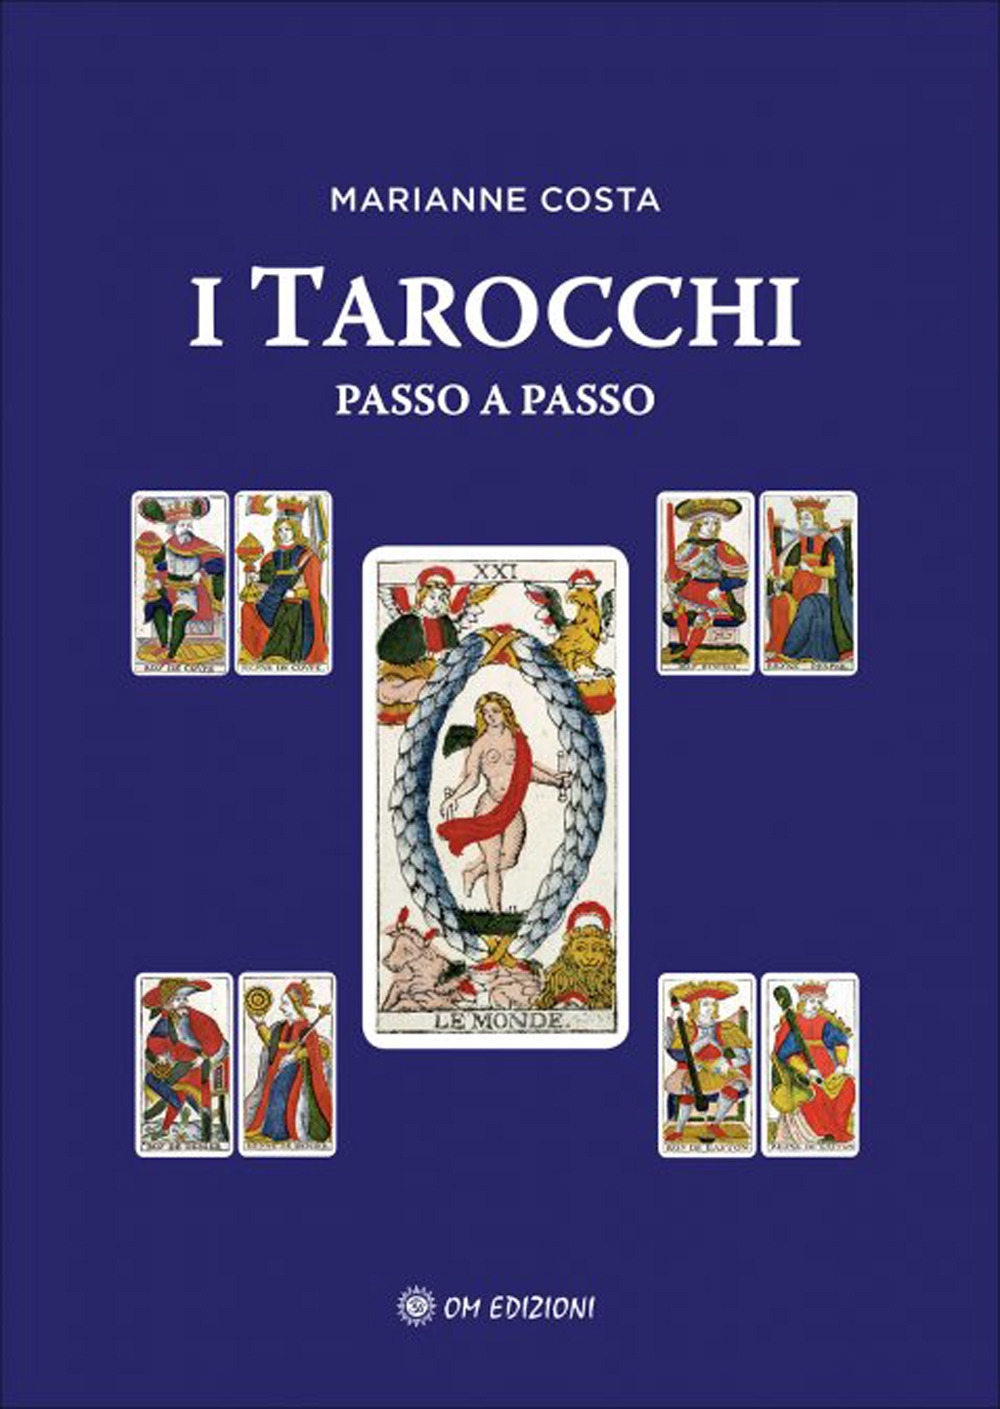 Libri Marianne Costa - I Tarocchi Passo A Passo NUOVO SIGILLATO, EDIZIONE DEL 18/06/2020 SUBITO DISPONIBILE